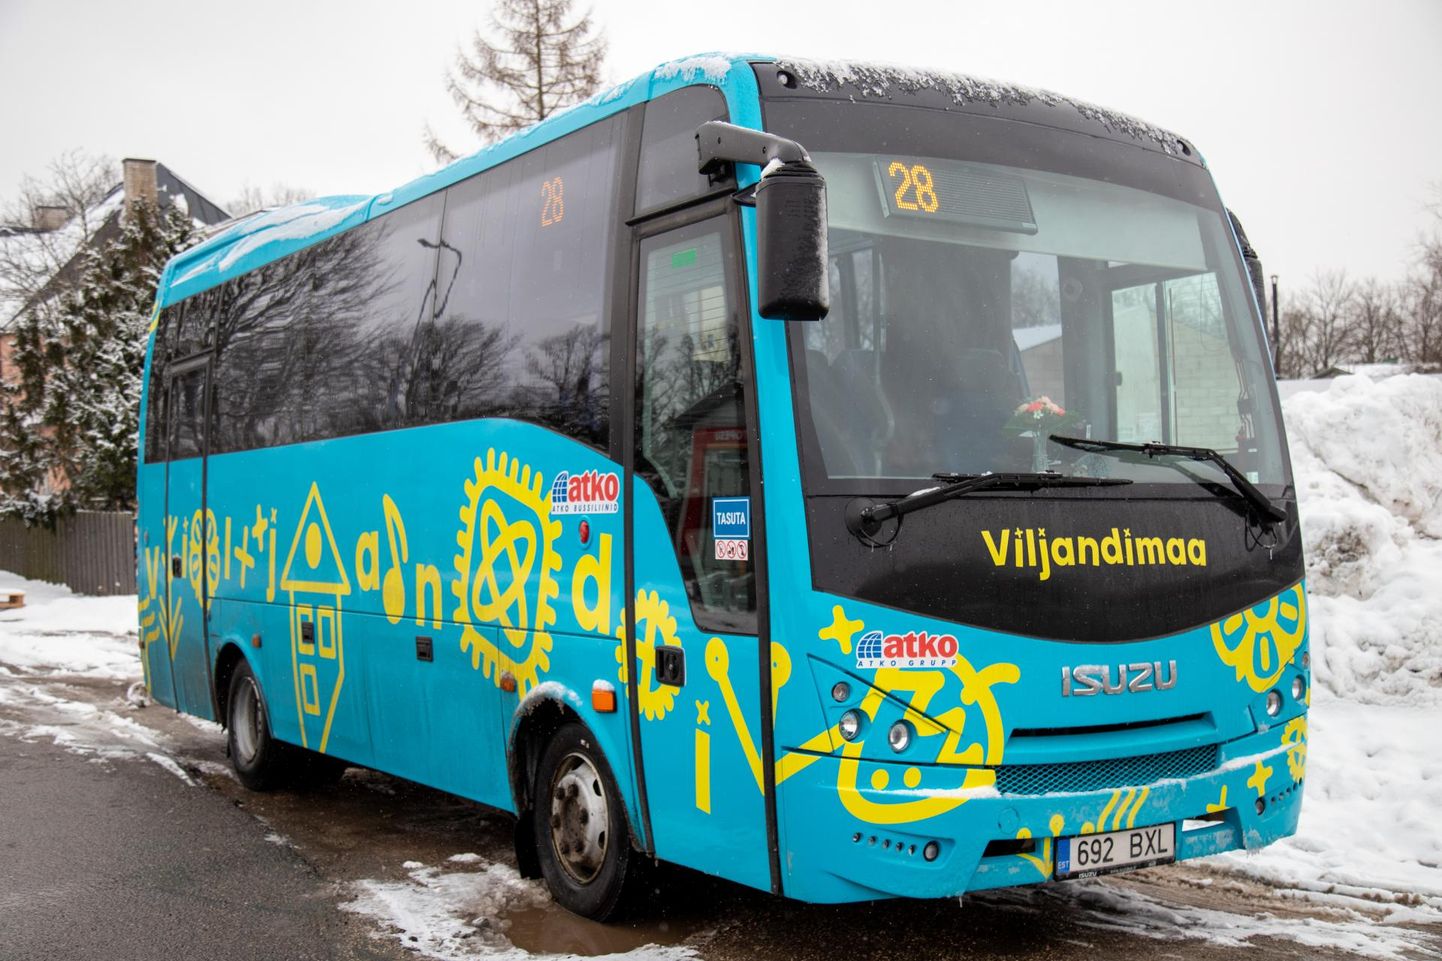 Koos jaanuariga lõpeb ka tasuta sõit Viljandimaa bussides.